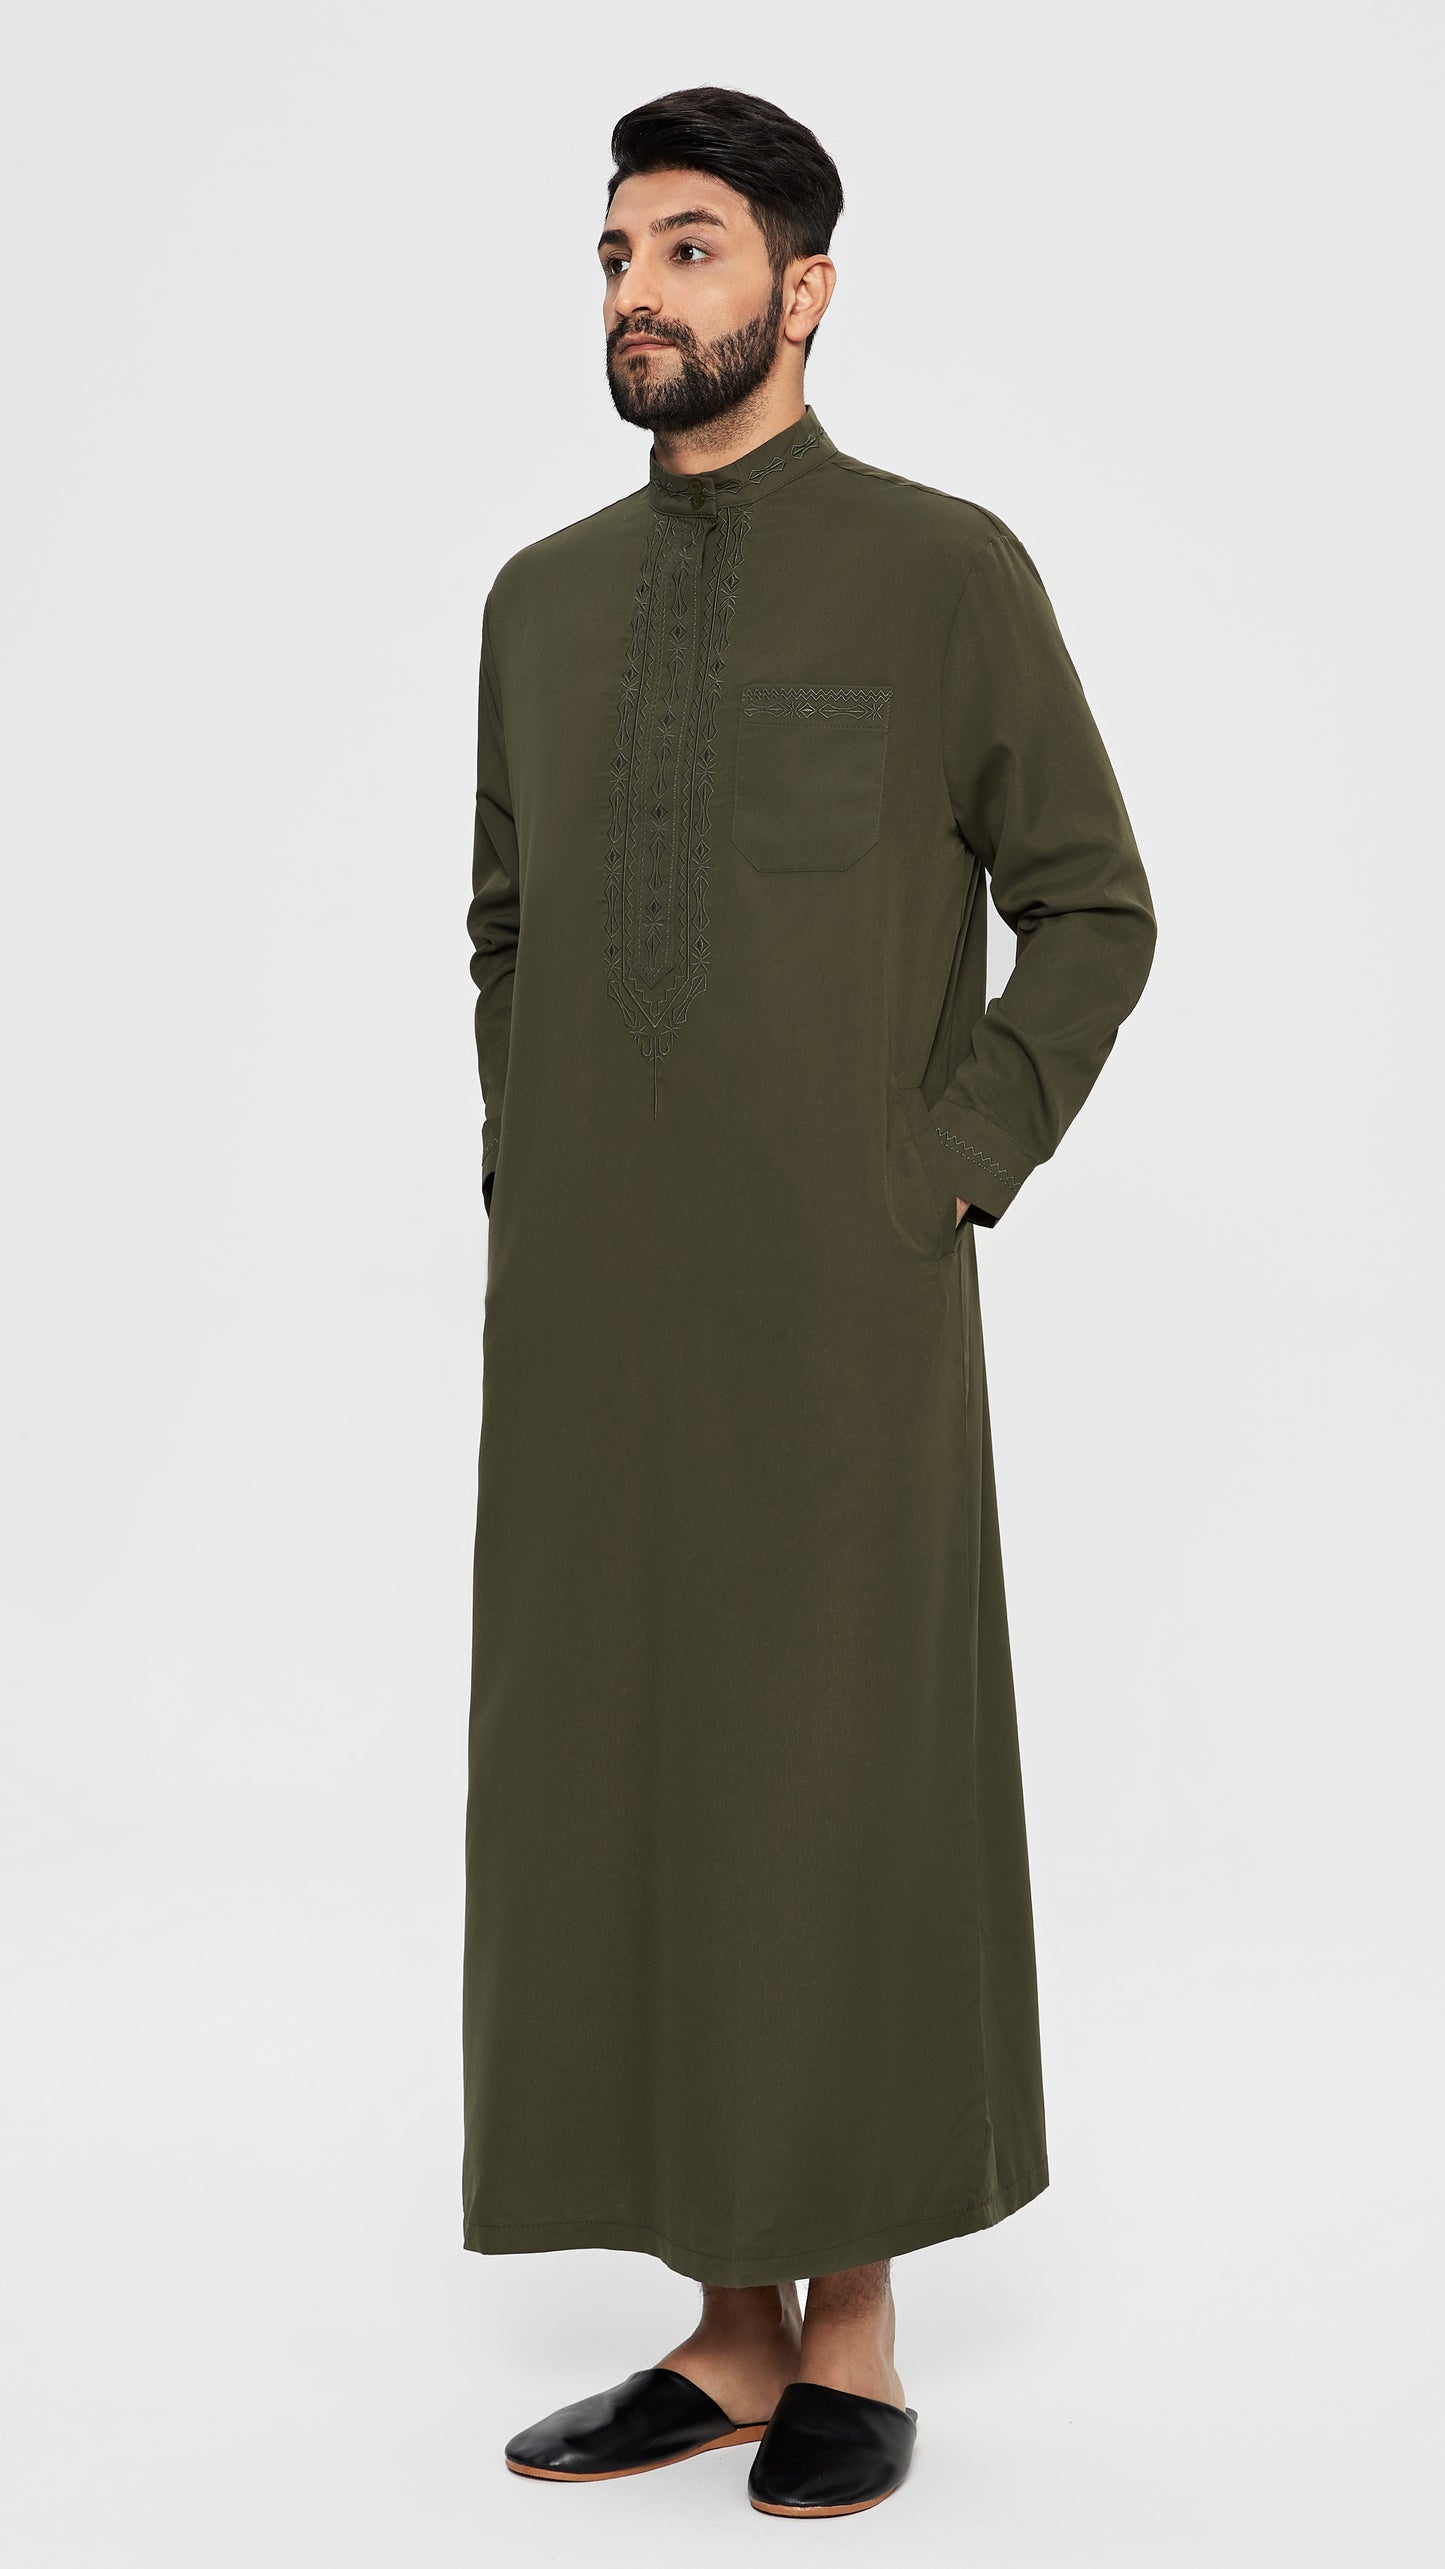 Qamis - Saudi Kaki with chest embroidery